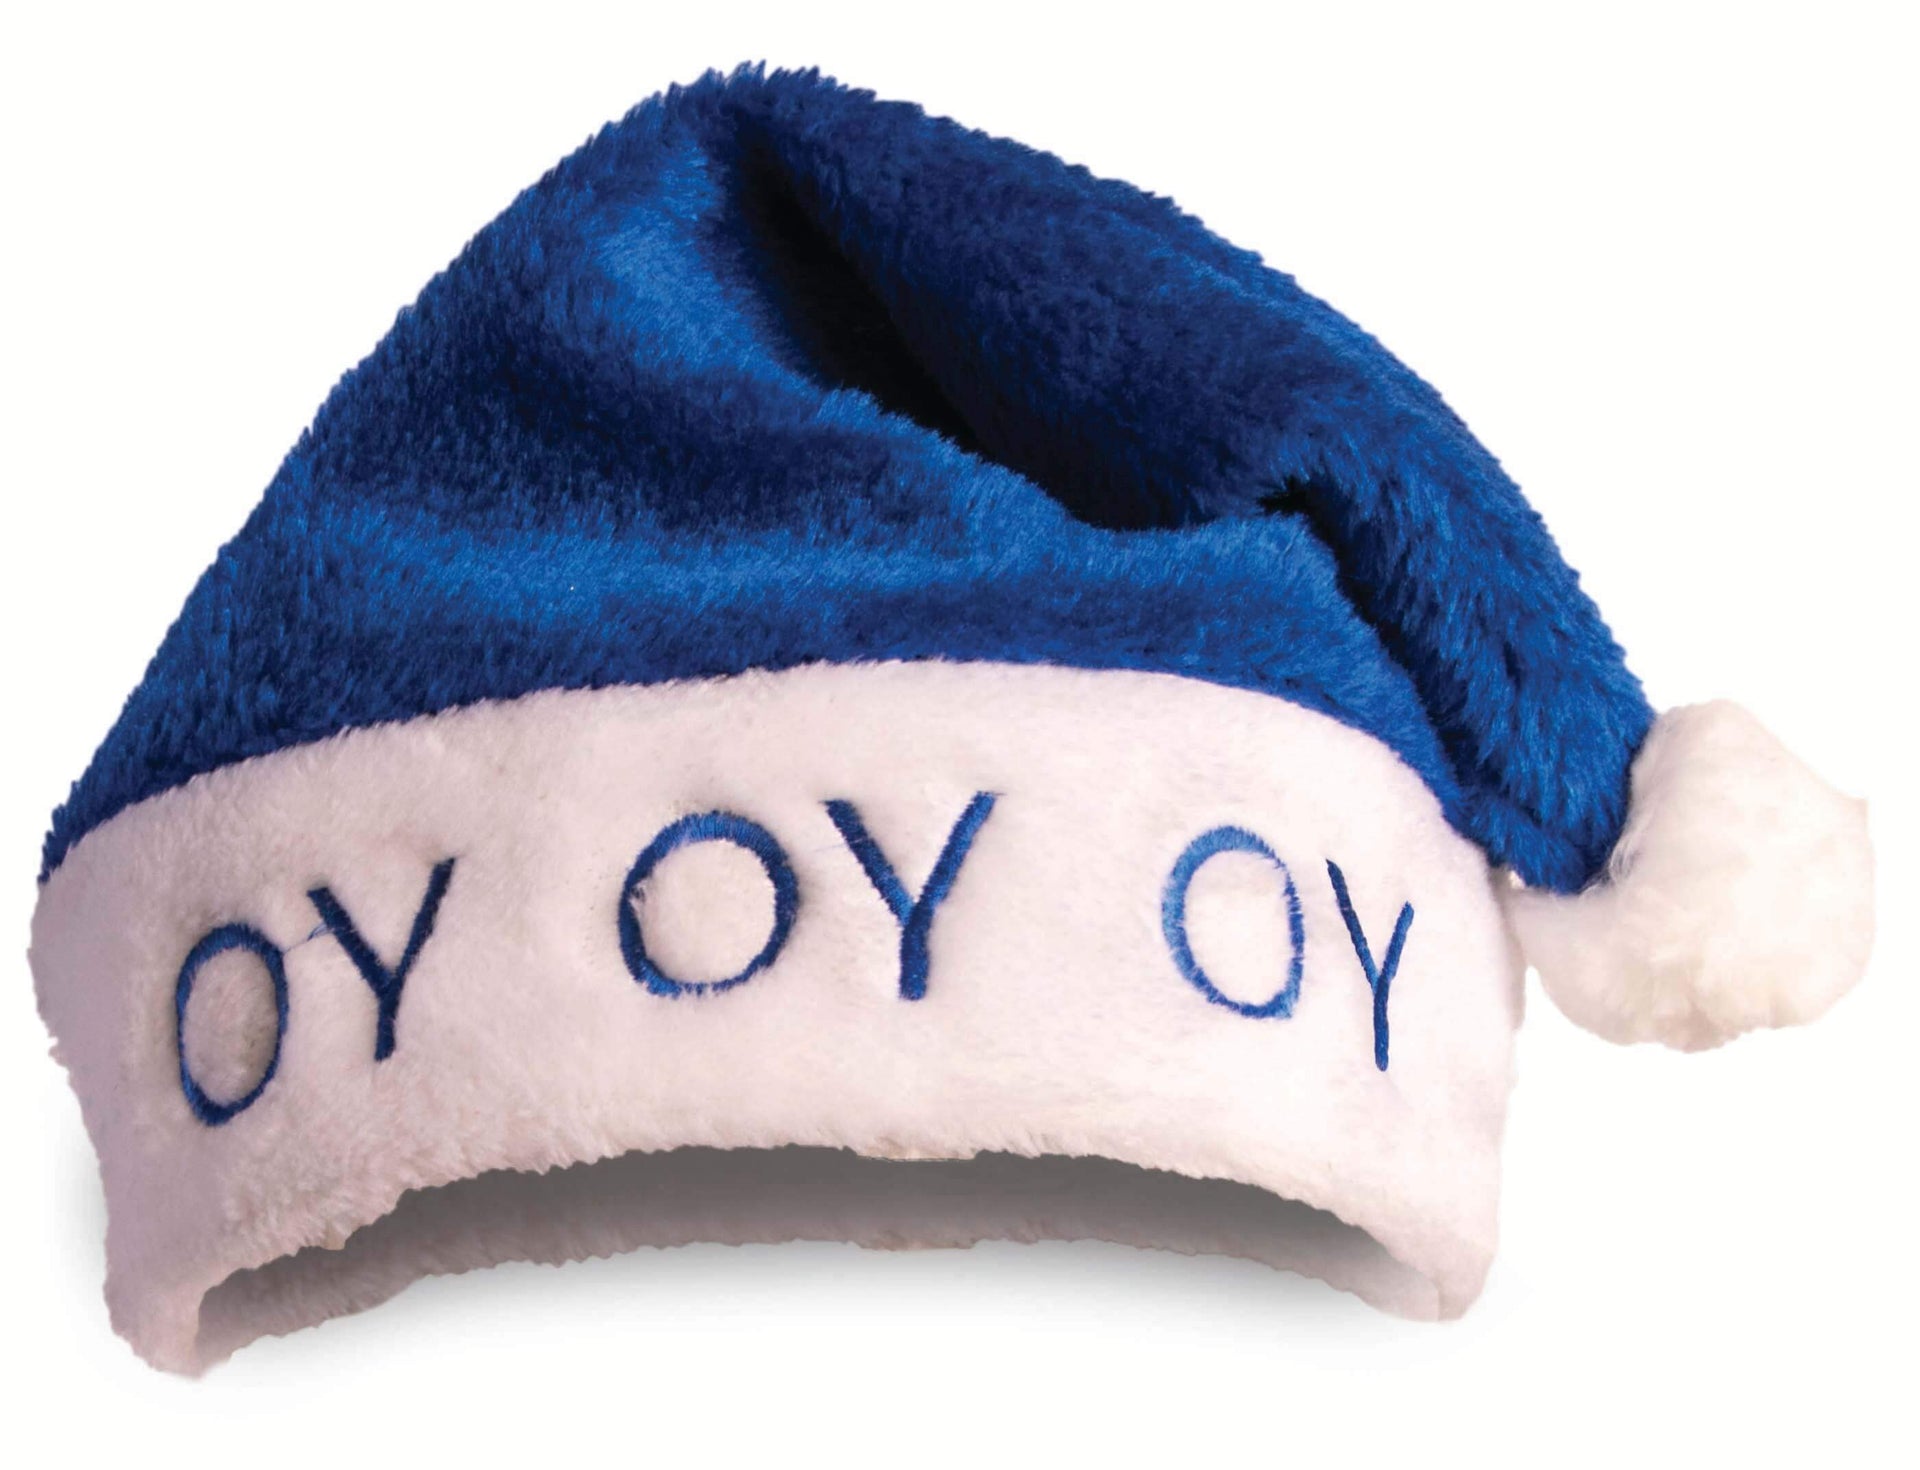 Other Hats Oy Oy Oy Hanukkah Hat